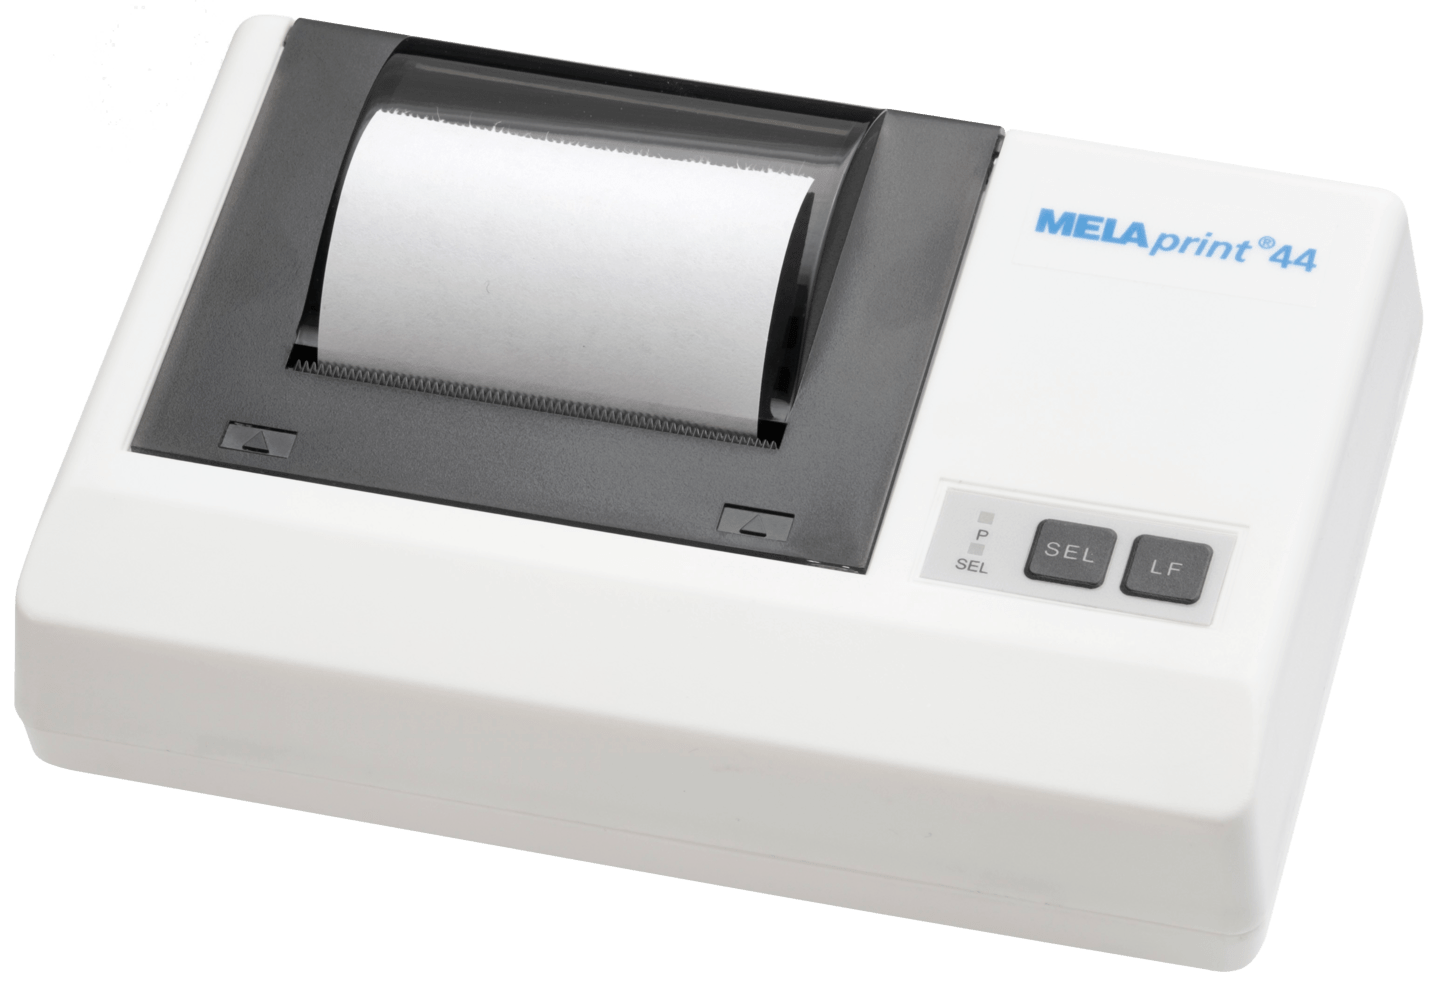 MELAG - MELAprint 44 Protokolldrucker in weiß